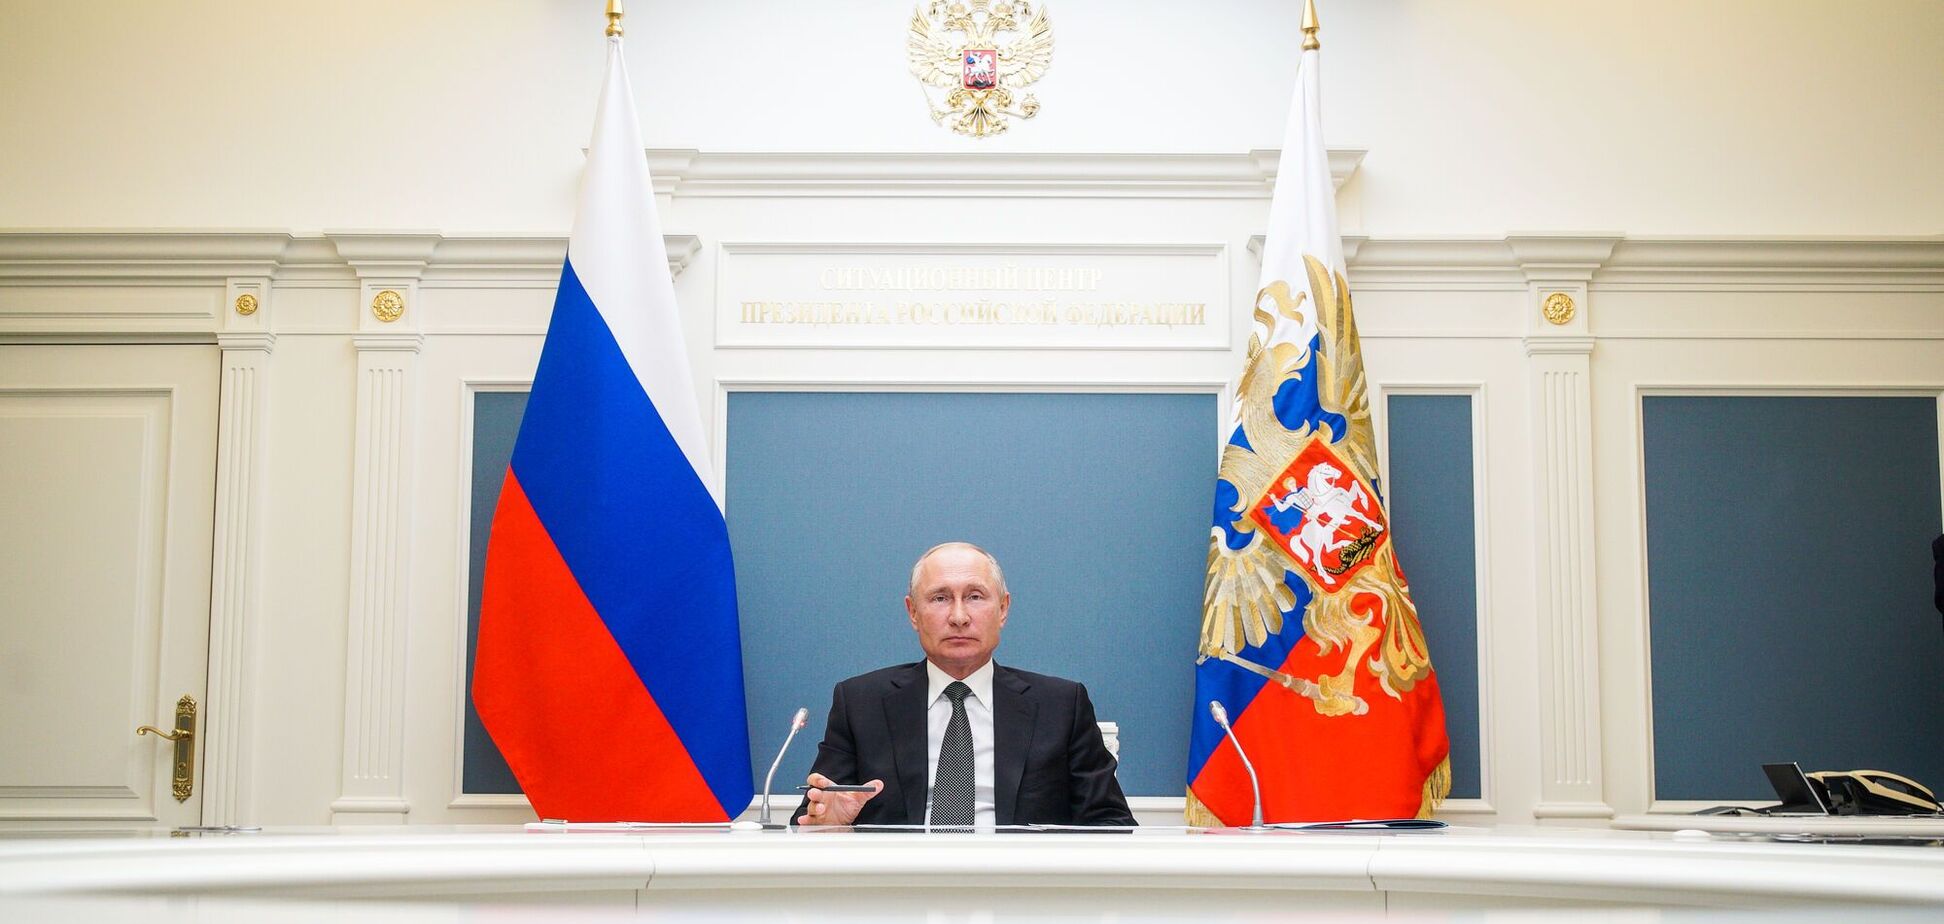 Адвокат Марк Фейгин рассказал о трудных временах президента России Владимира Путина